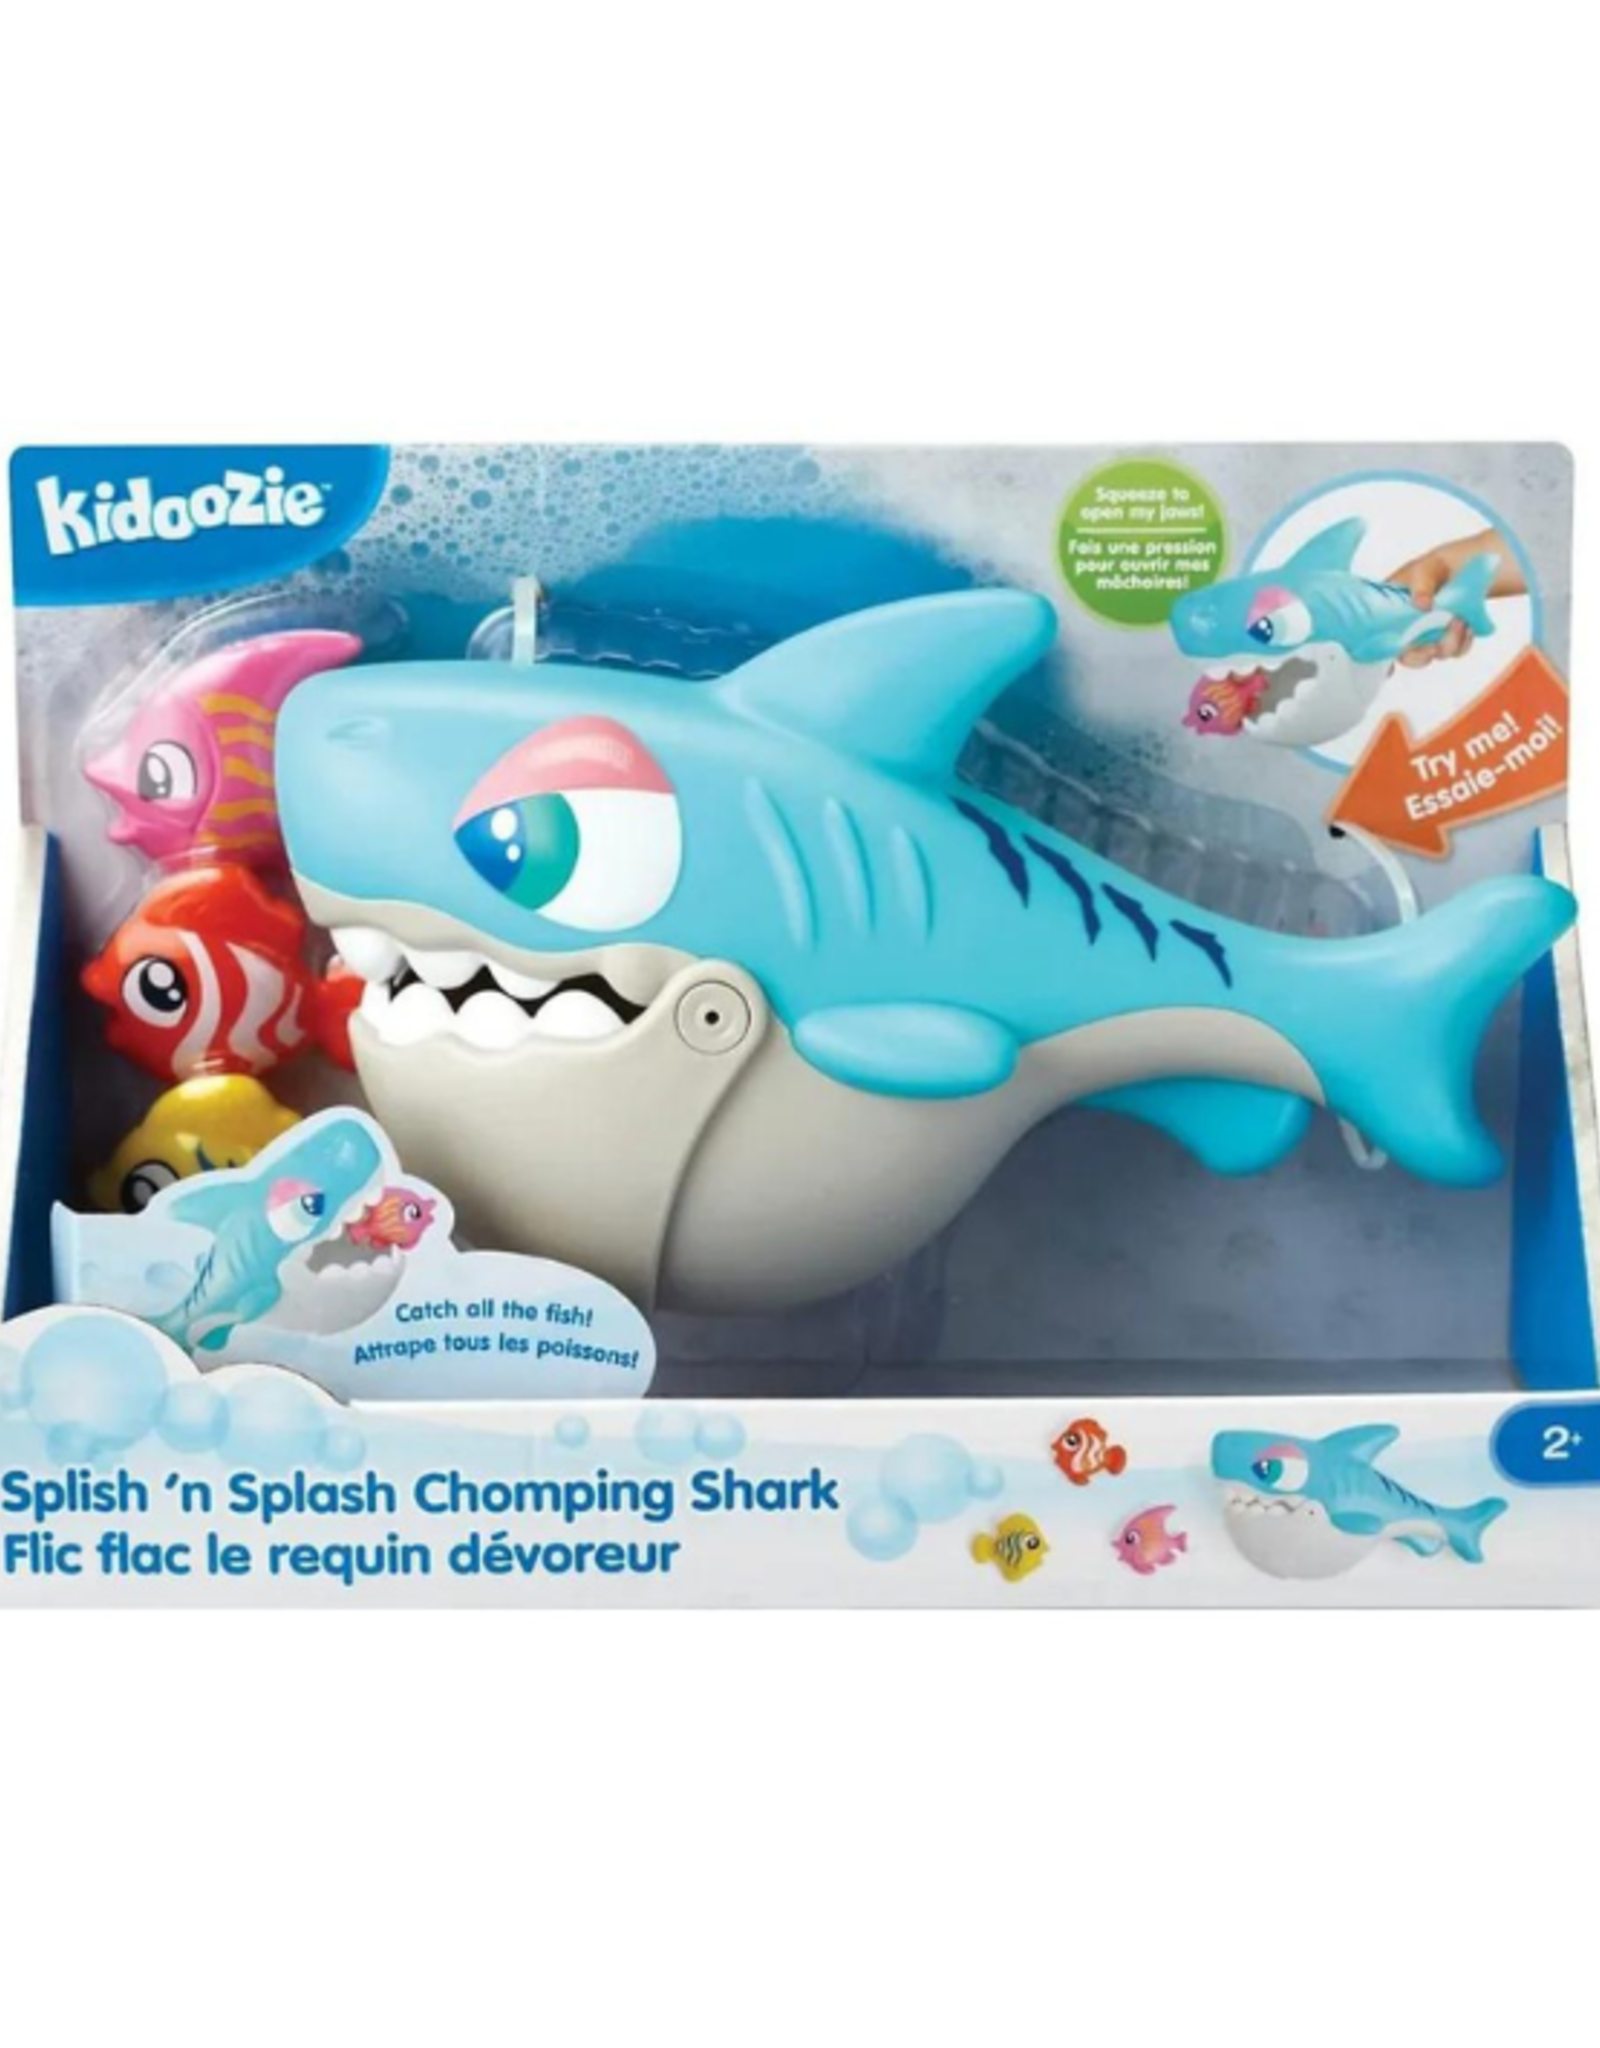 Kidoozie Kidoozie - Splish n' Splash Chomping Shark